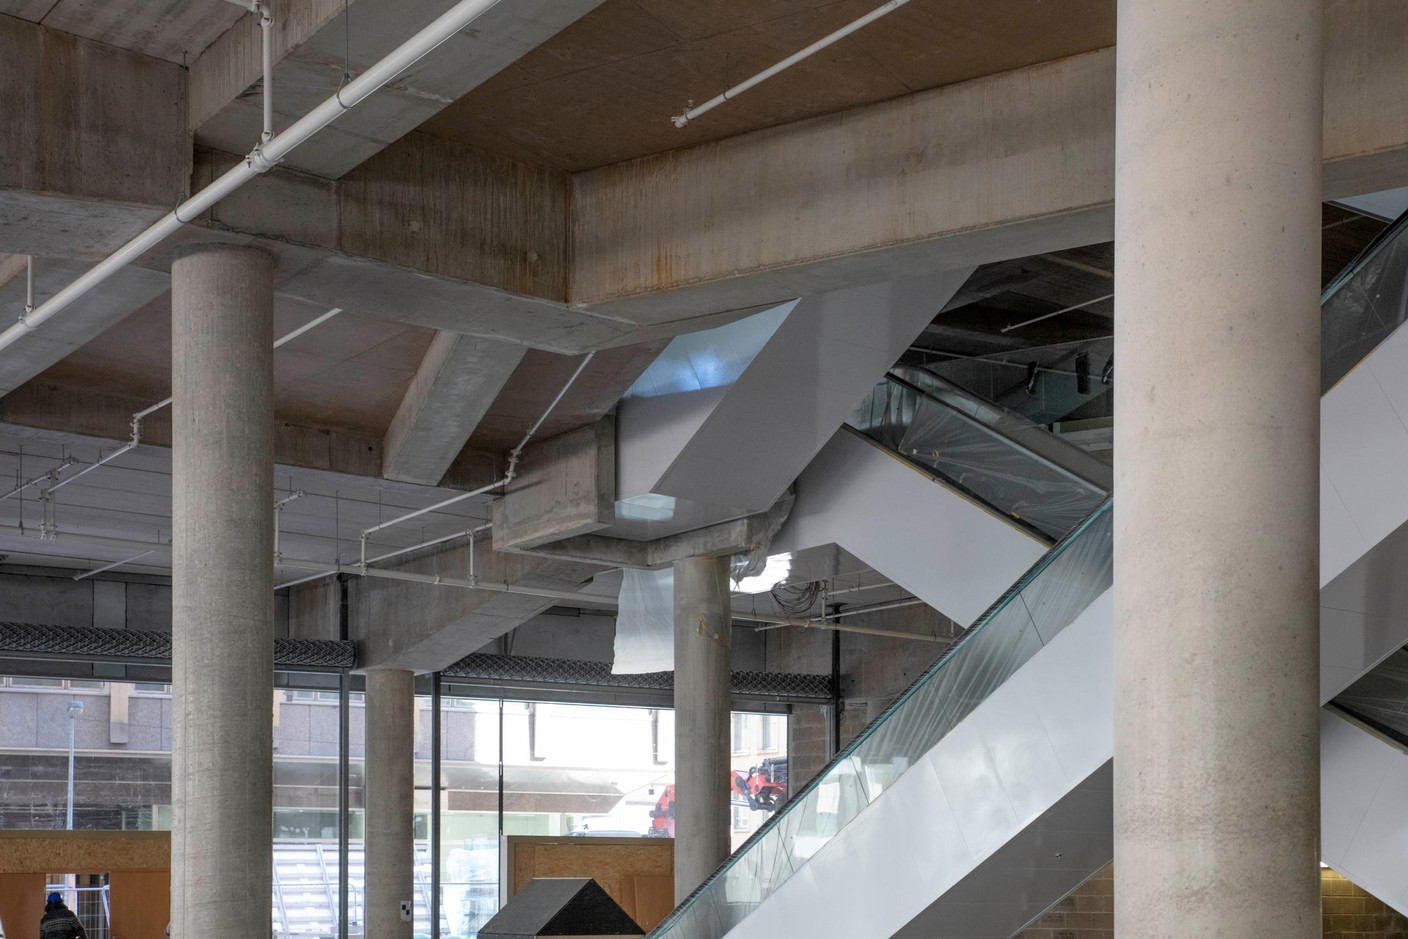 À l’intérieur des Galeries Lafayette, 10 escalators desserviront les étages. (Photo: Jan Hanrion / Maison Moderne)